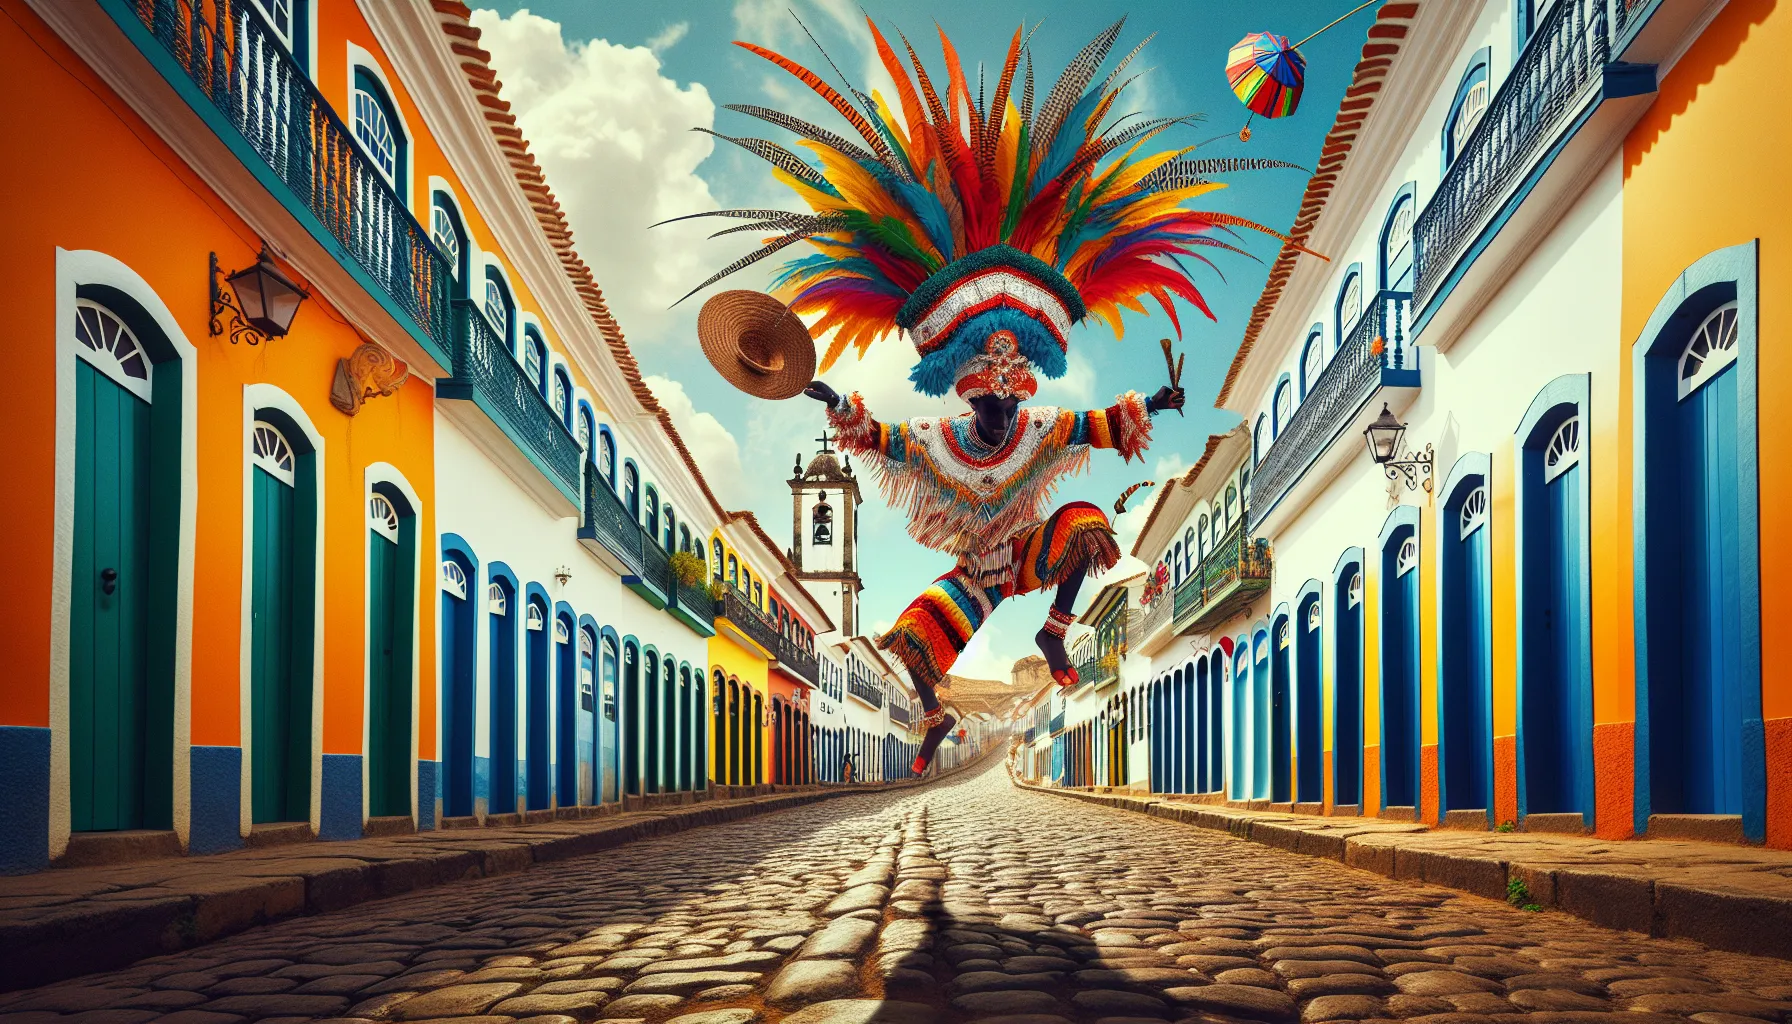 O frevo é um estilo de música e dança originário da cidade de Recife, no estado de Pernambuco, no Brasil. Ele surgiu no final do século XIX e é considerado um dos principais símbolos da cultura pernambucana.

O frevo é caracterizado por sua energia contagiante, ritmo acelerado e passos de dança complexos. Ele é tocado principalmente por uma orquestra de meta